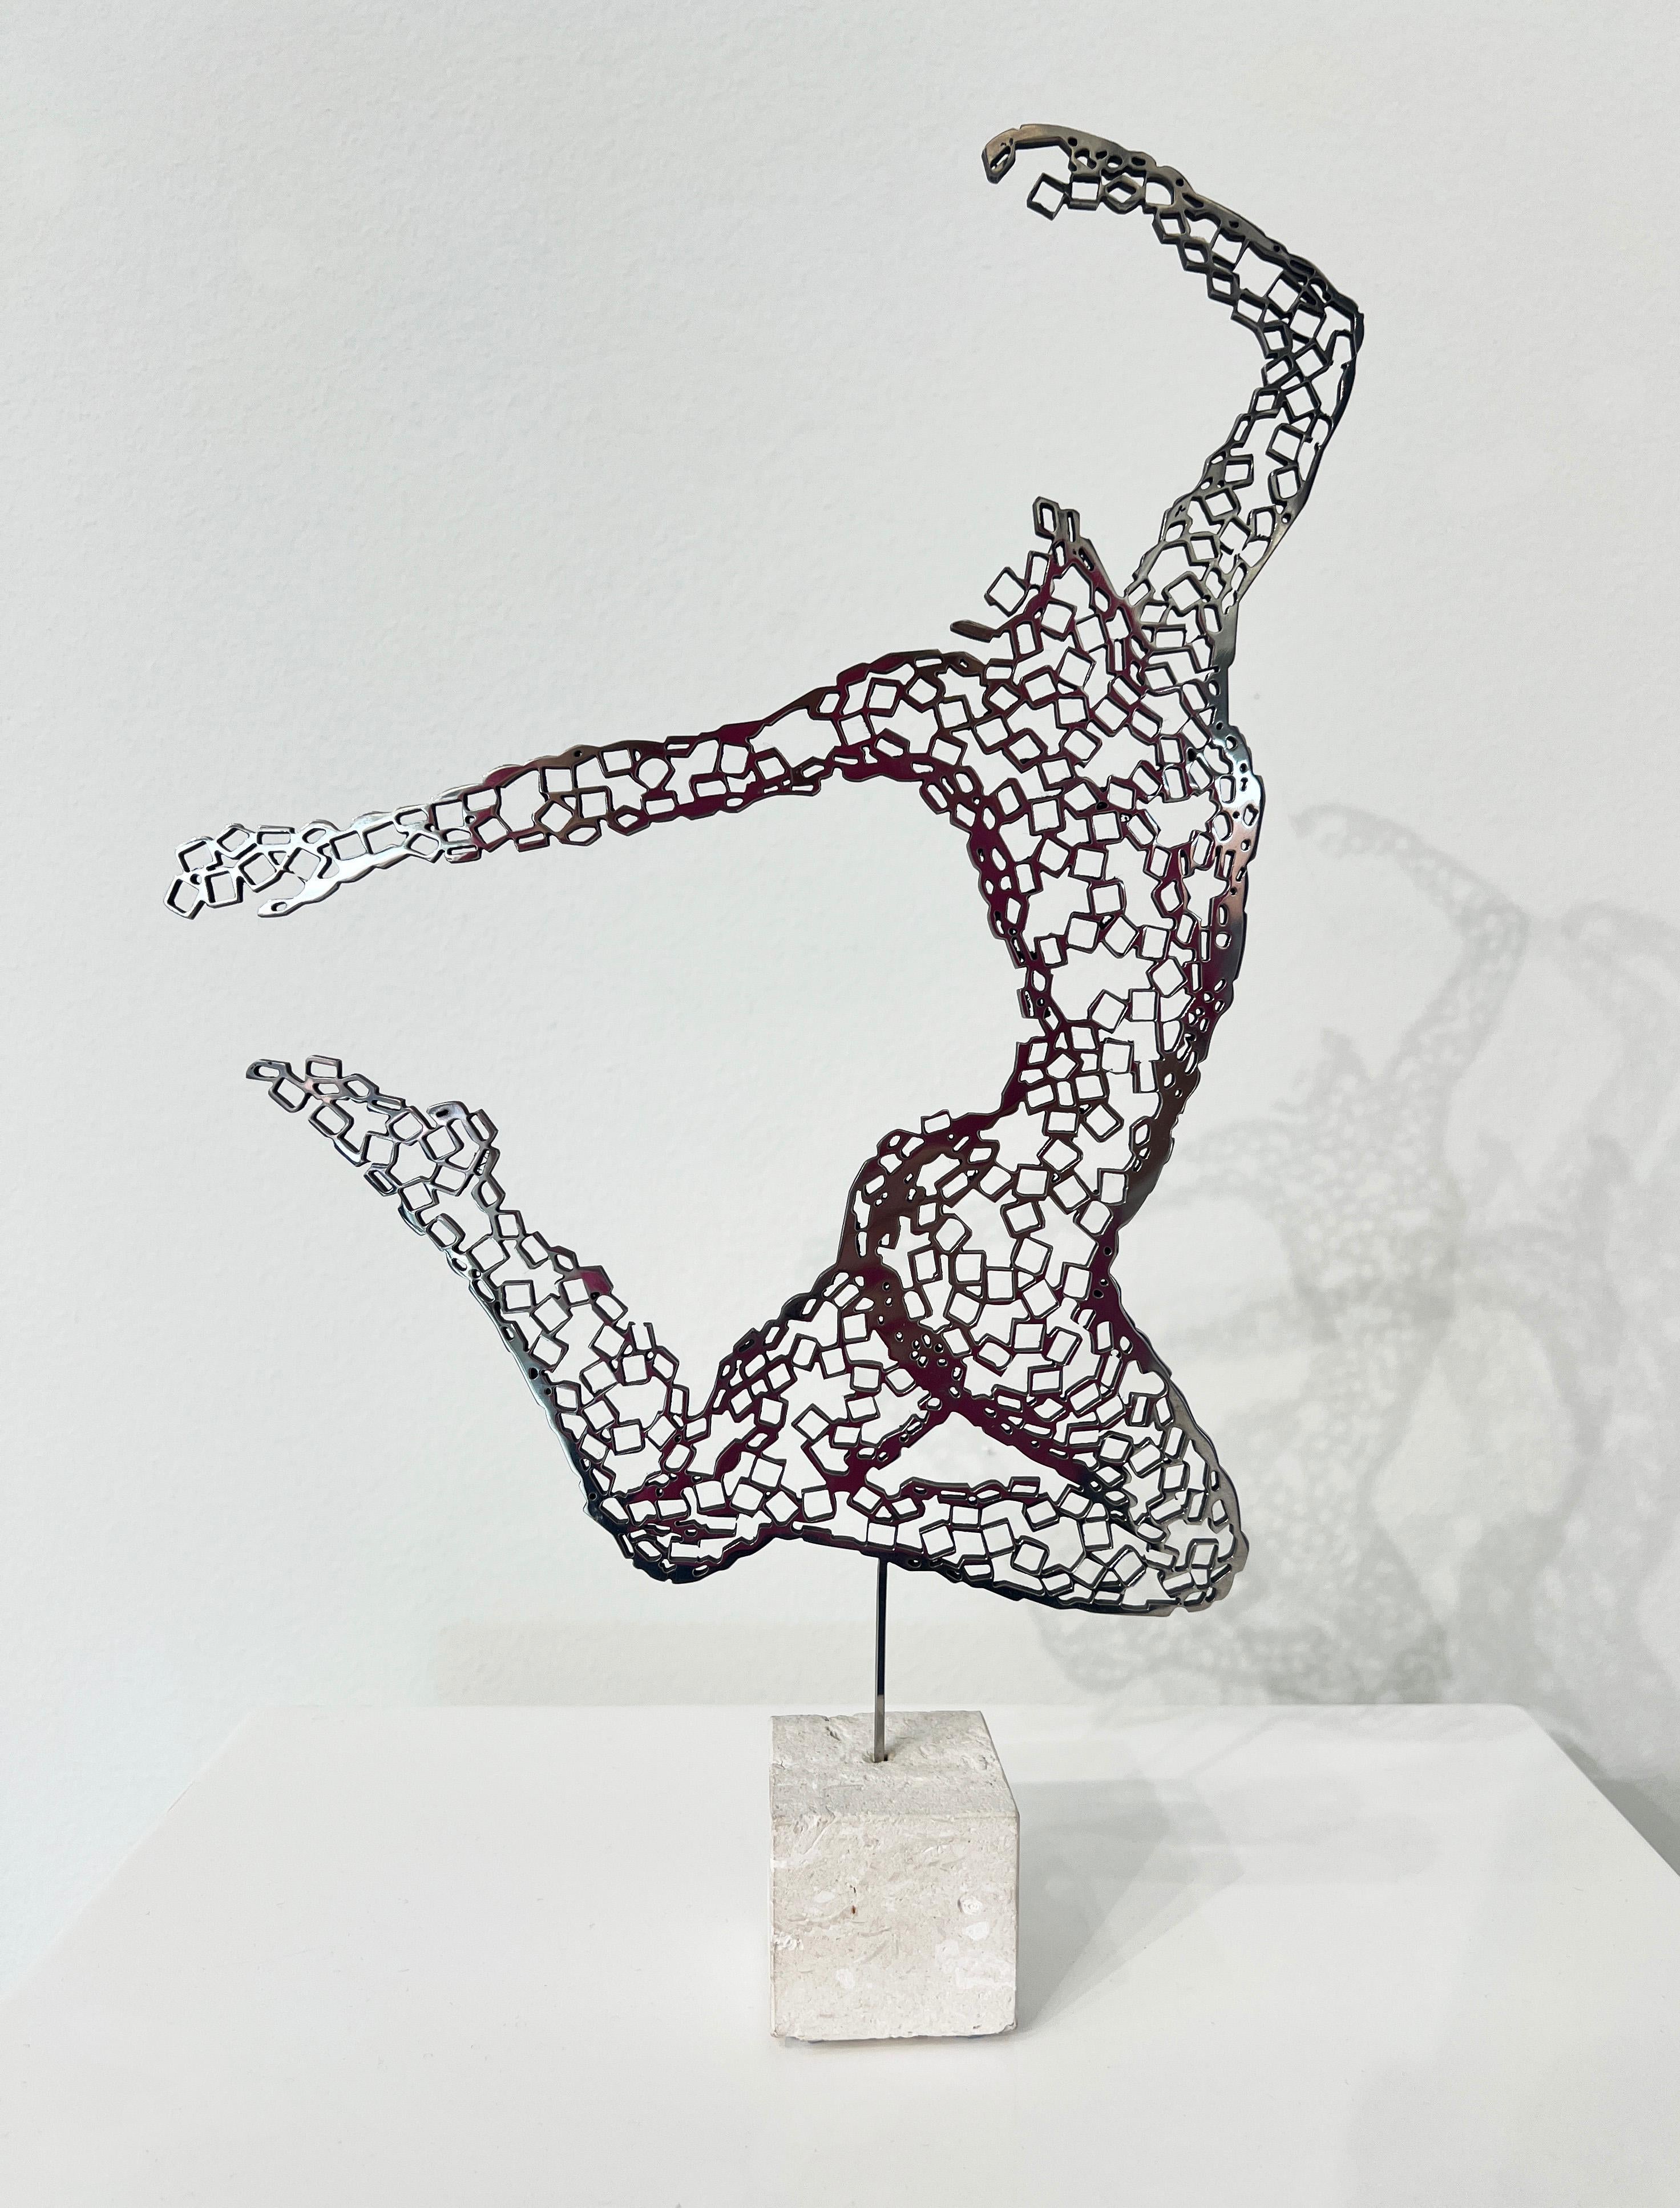 White Swan - Sculpture by Rainer Lagemann